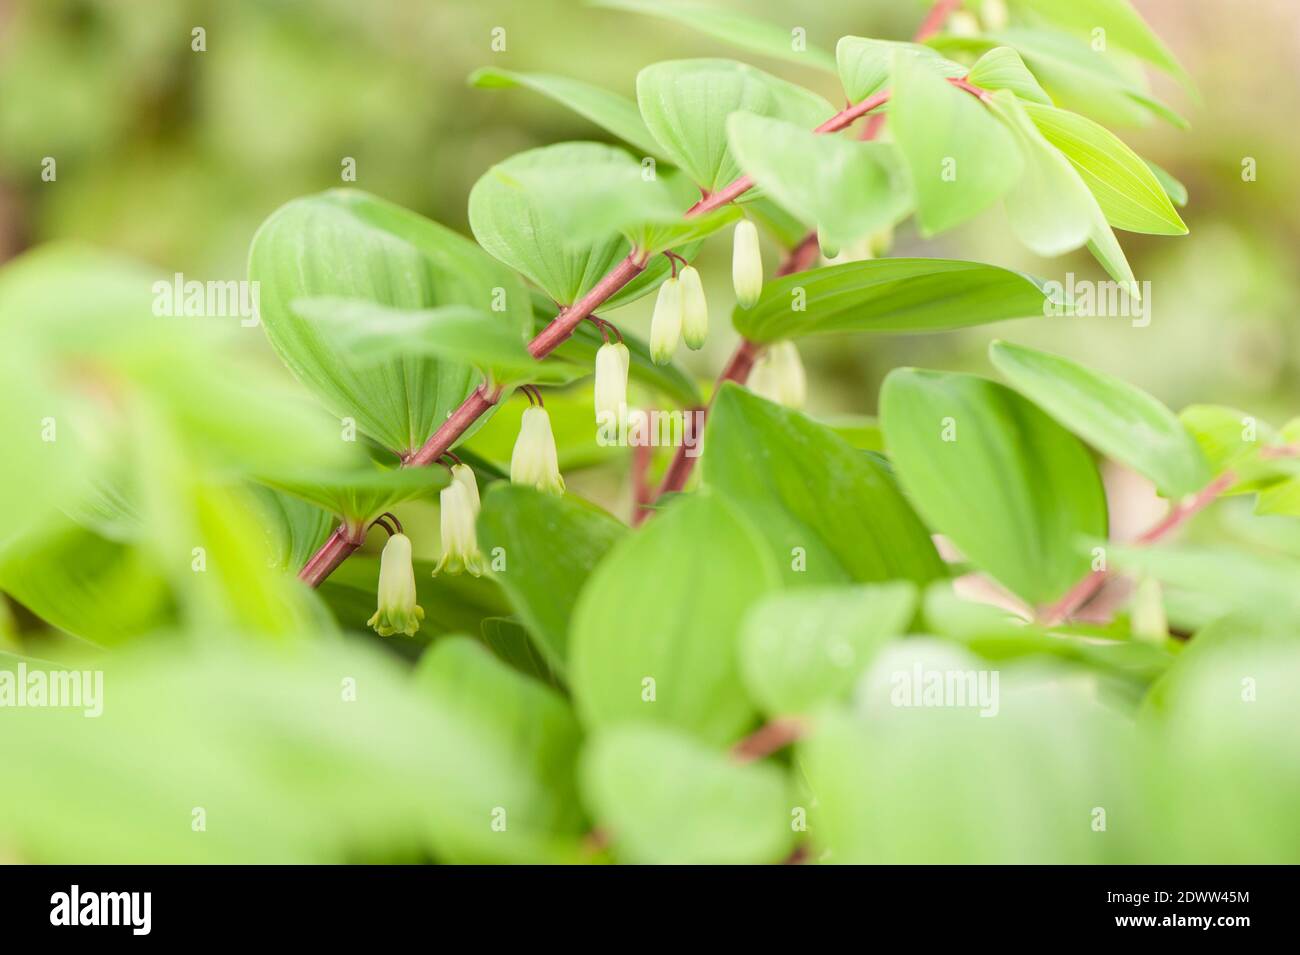 Polygonatum odoratum ‘tallo rojo’, sello angular de Salomón 'tallo rojo', en flor Foto de stock